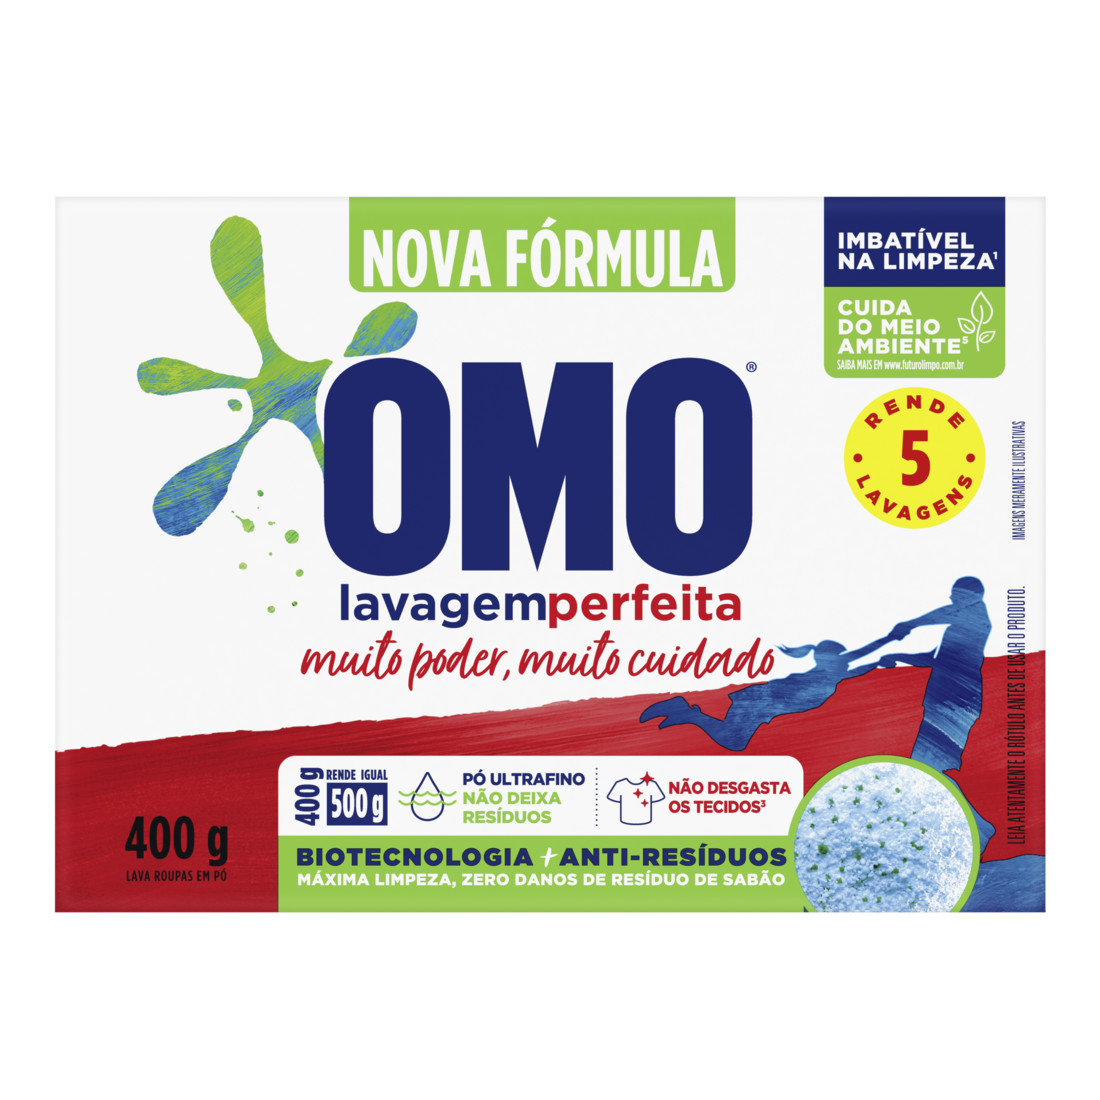 Sabão em Pó OMO Lavagem Perfeita. Product box with omo logo. 